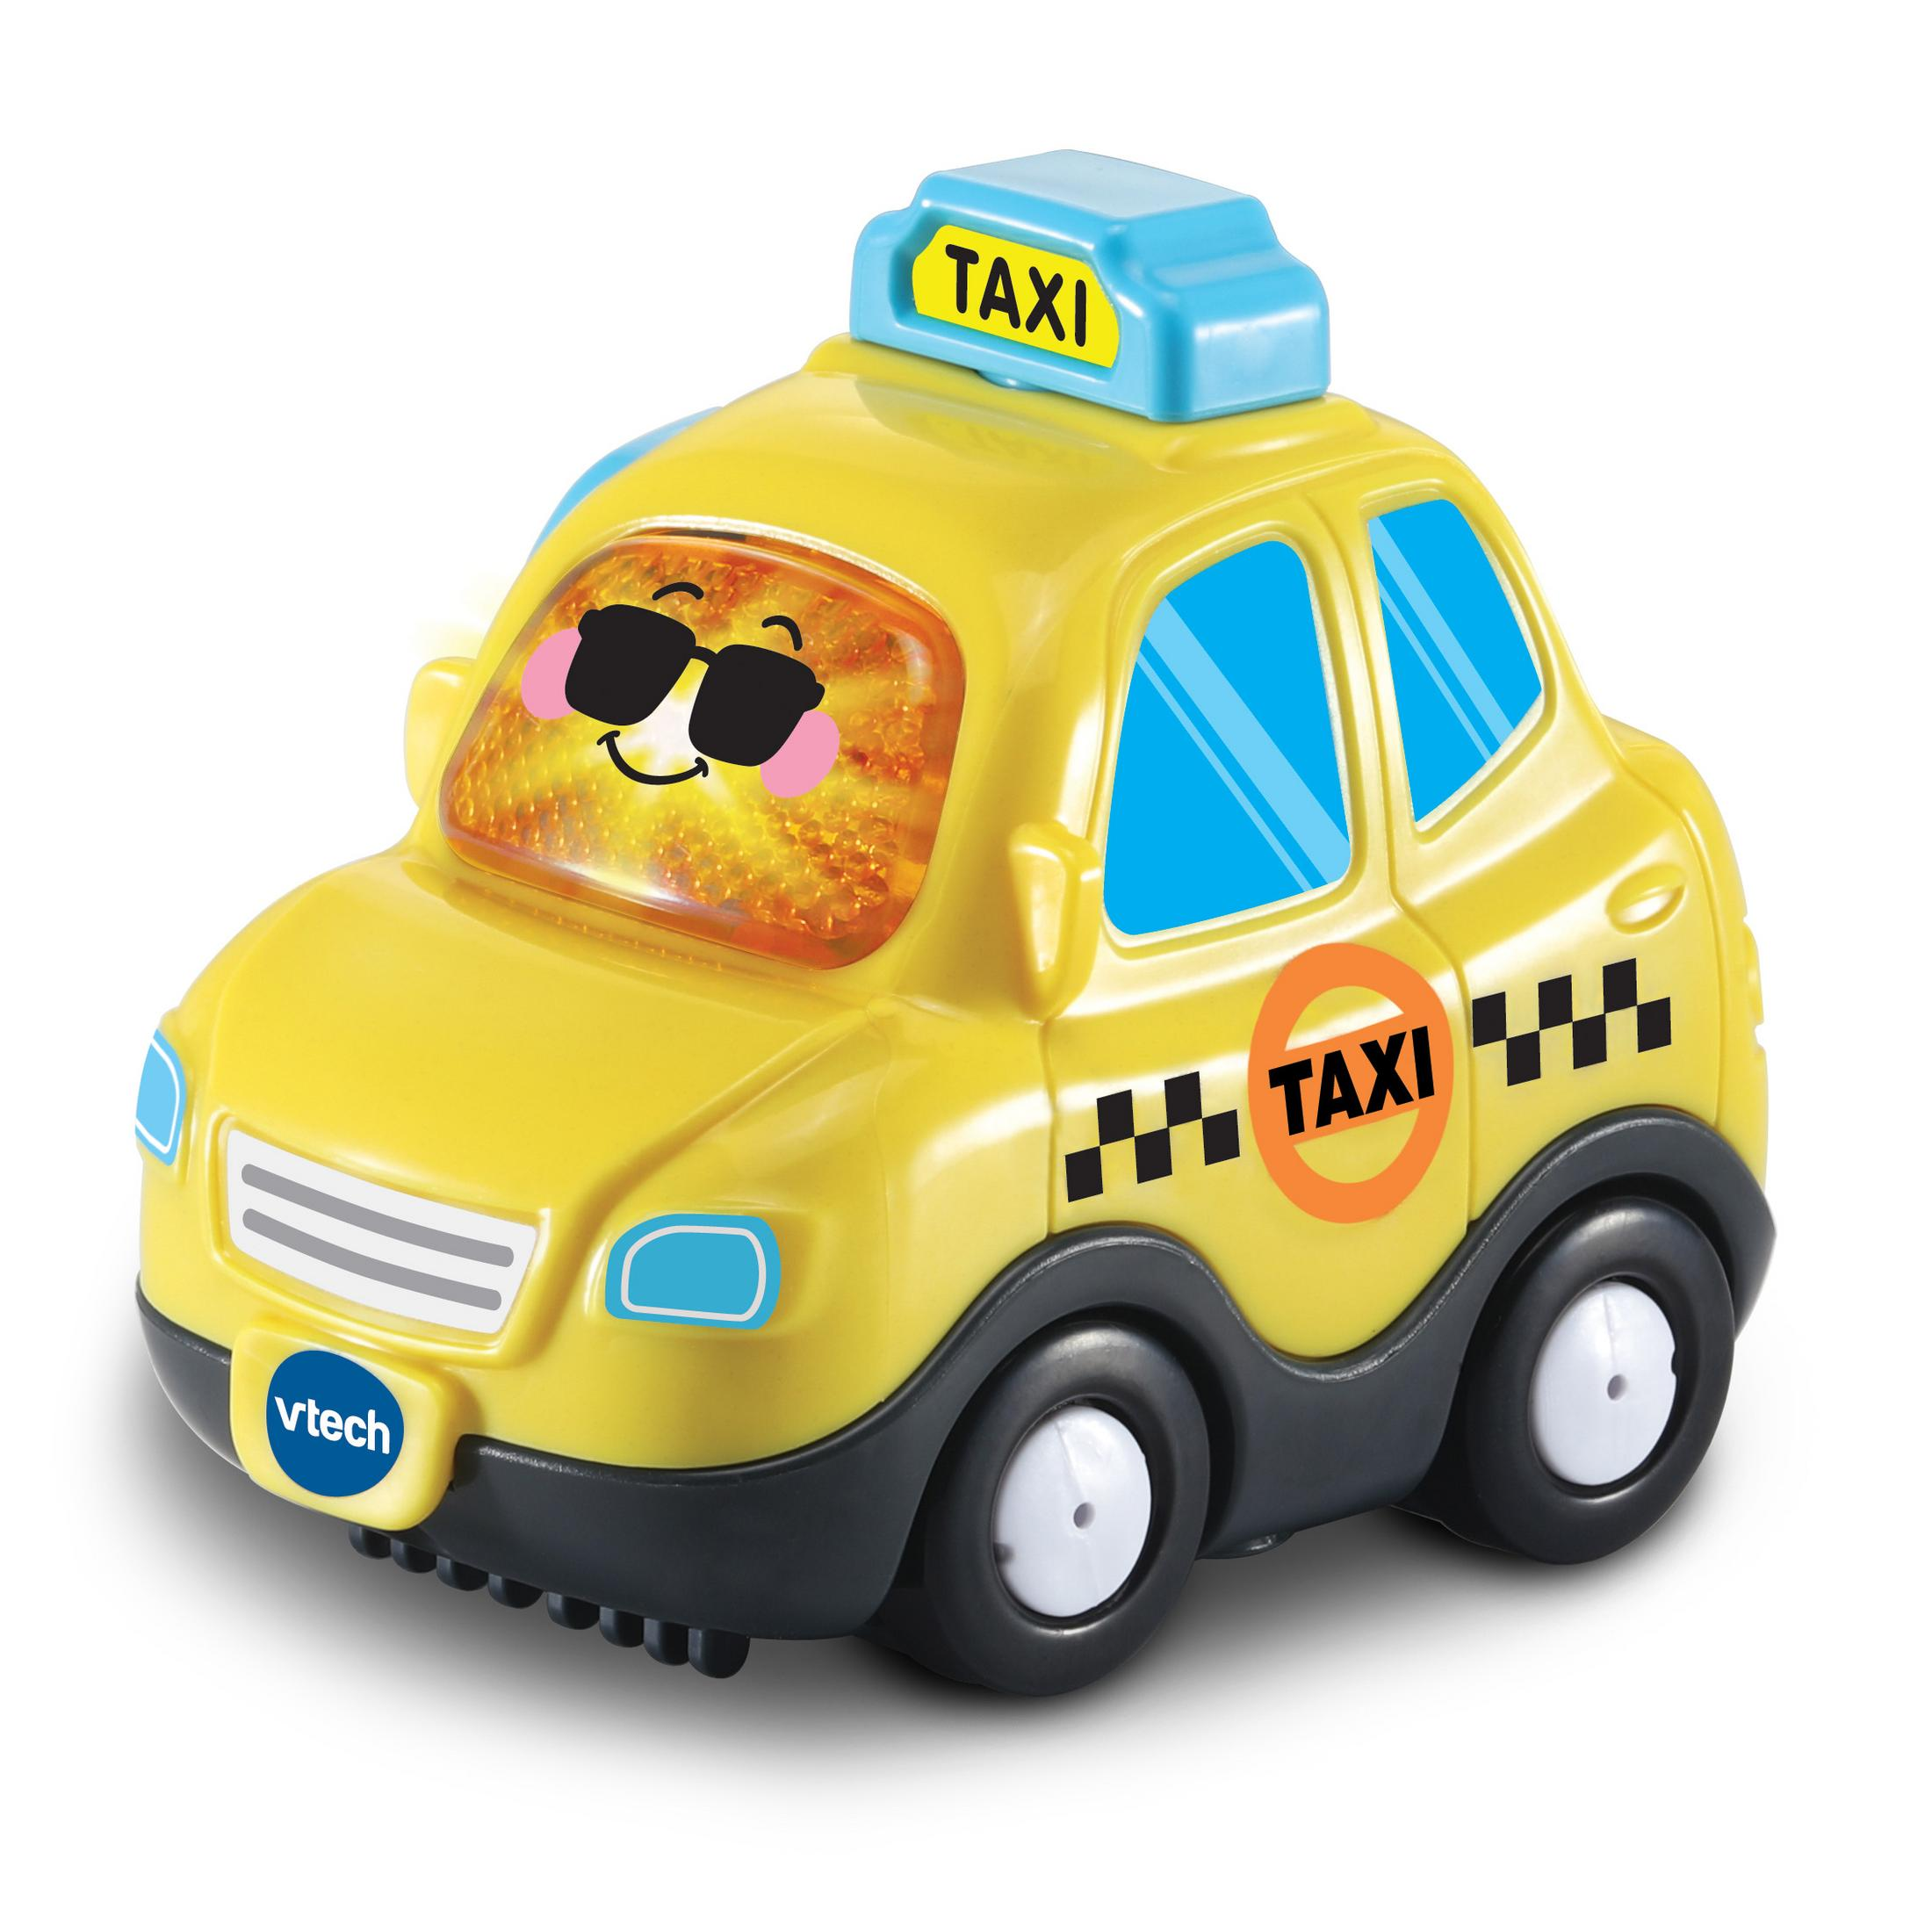 VTECH 80-561104 TUT TUT BF TAXI - Gelb Spielzeugauto